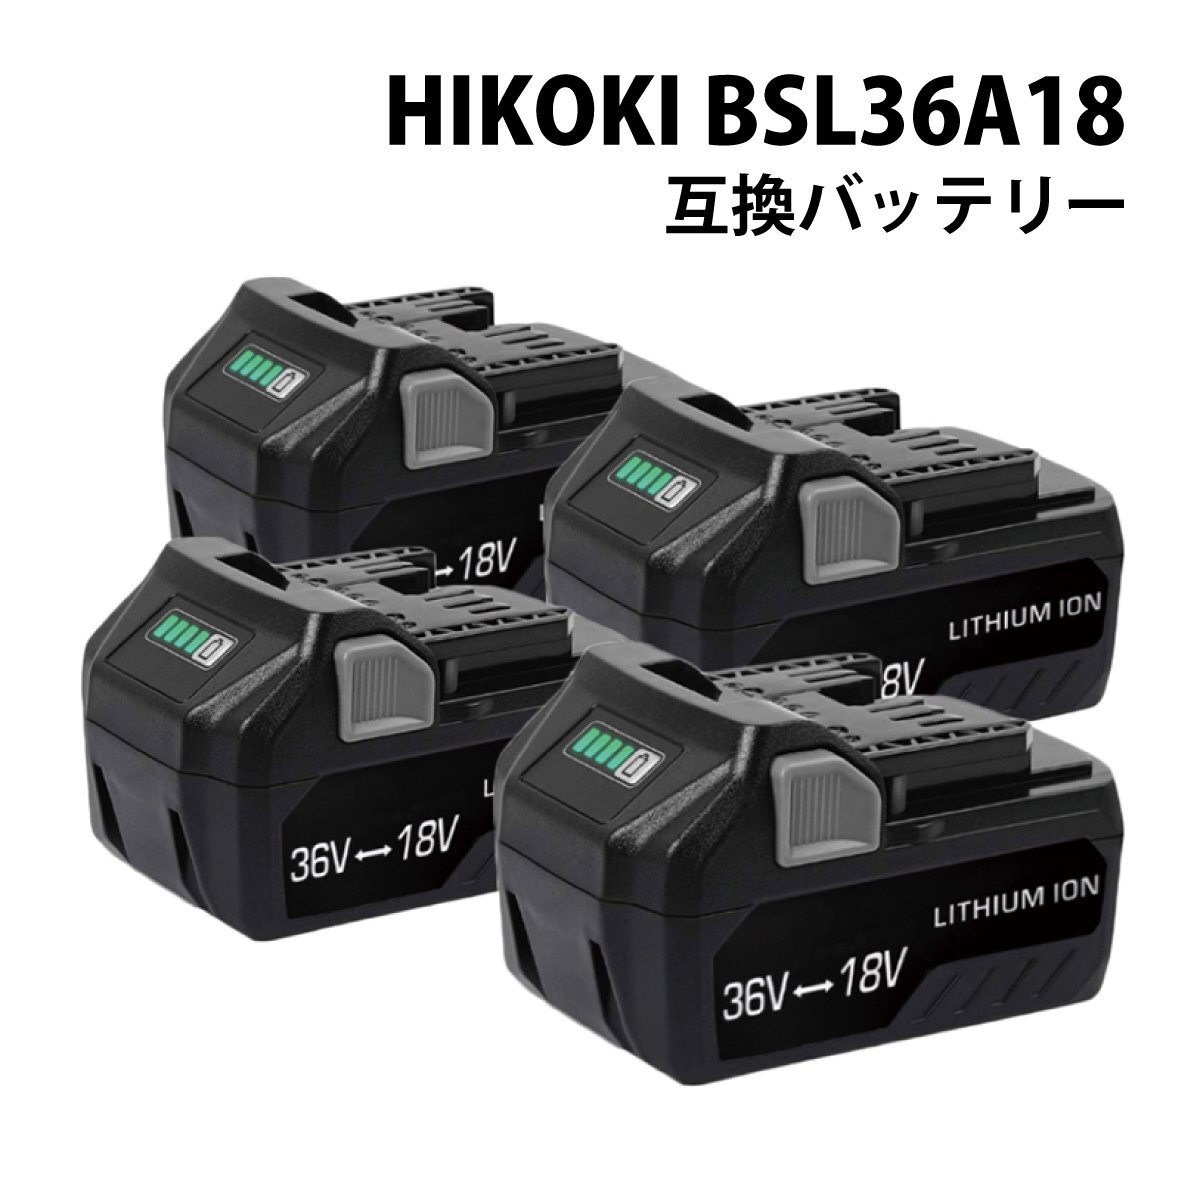 【送料無料】 4個セット HiKOKI BSL36A18 互換 バッテリー 36V 18V 自動切替 36V-3.0Ah / 18V-6.0Ah マルチボルト ハイコーキ BSL36B18